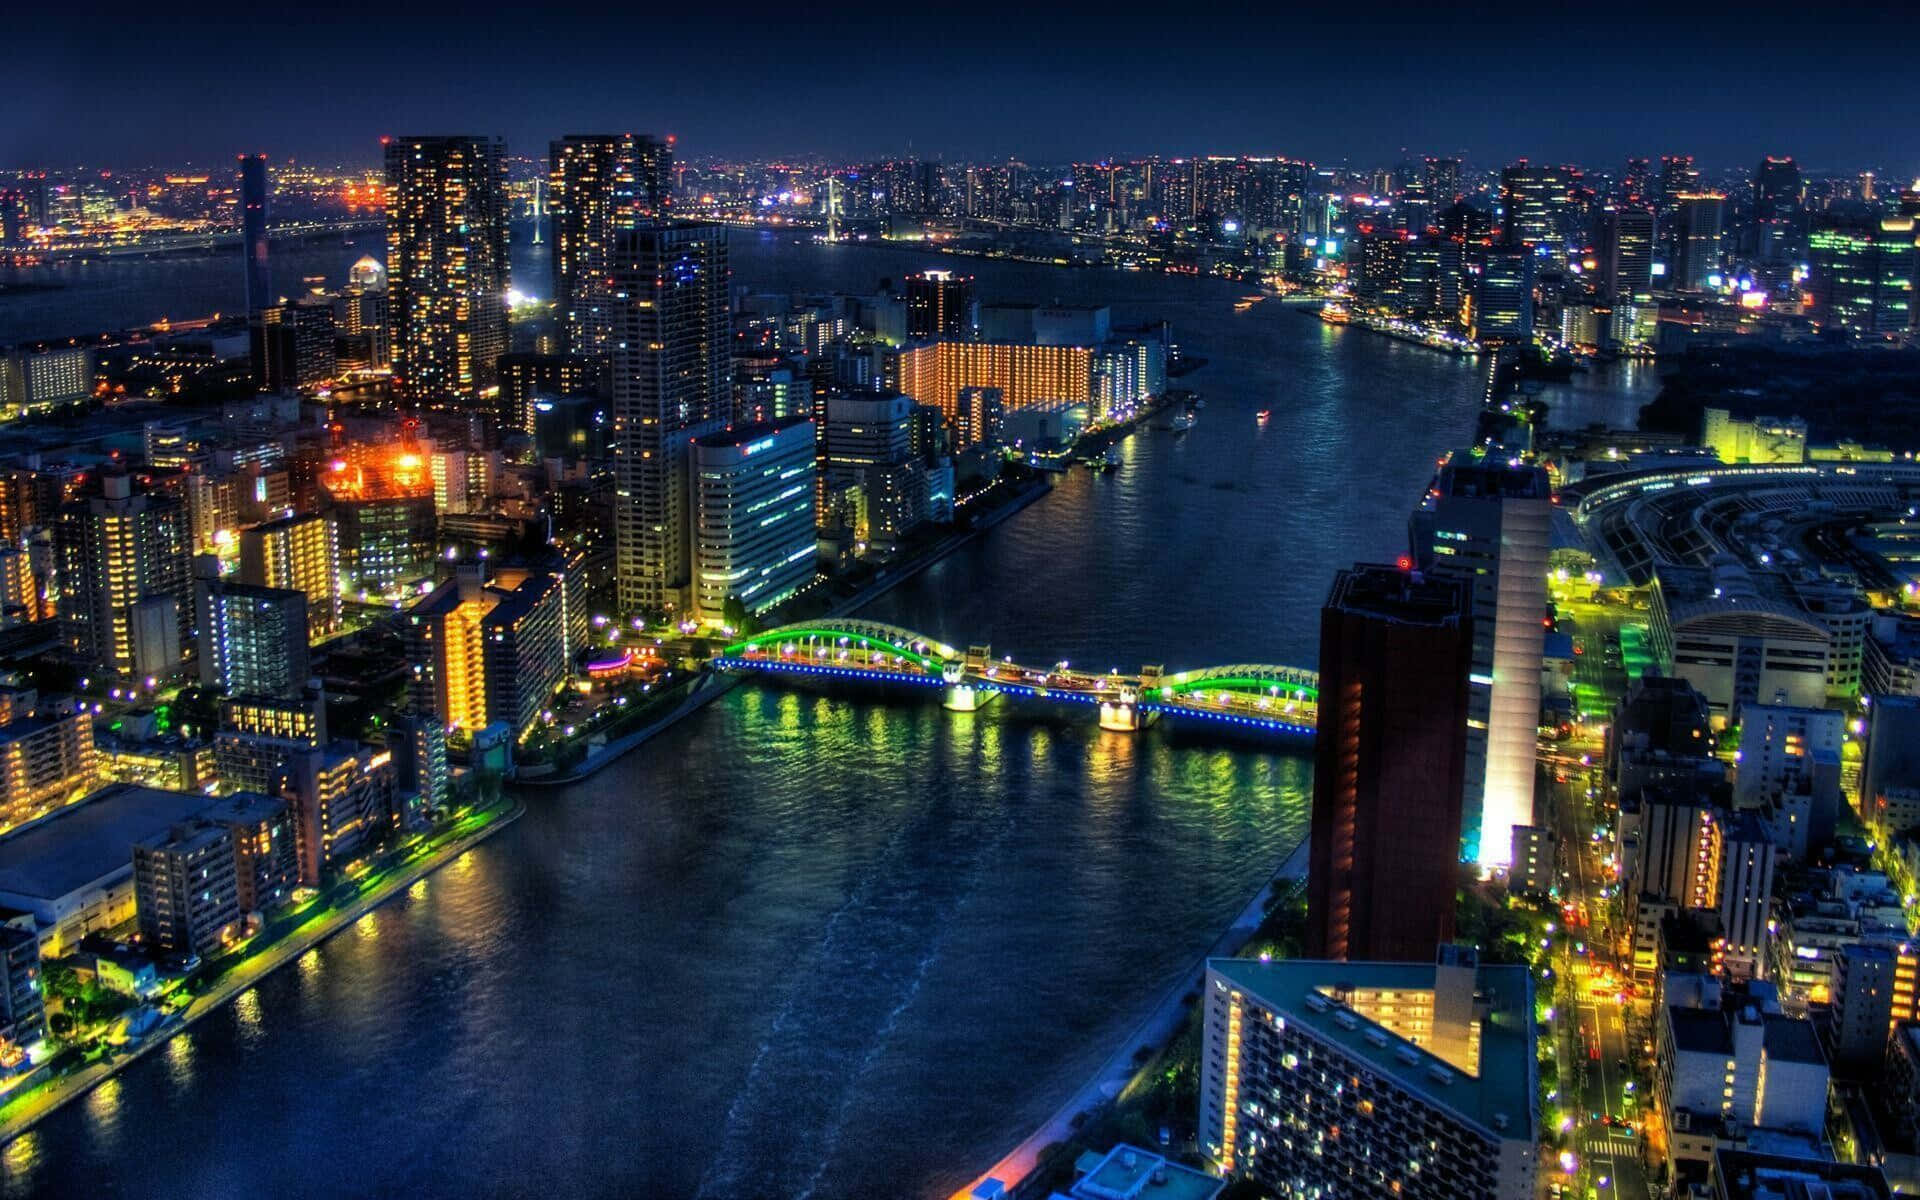 Fondode Pantalla De Tokio: Puente Kachidoki De Noche.